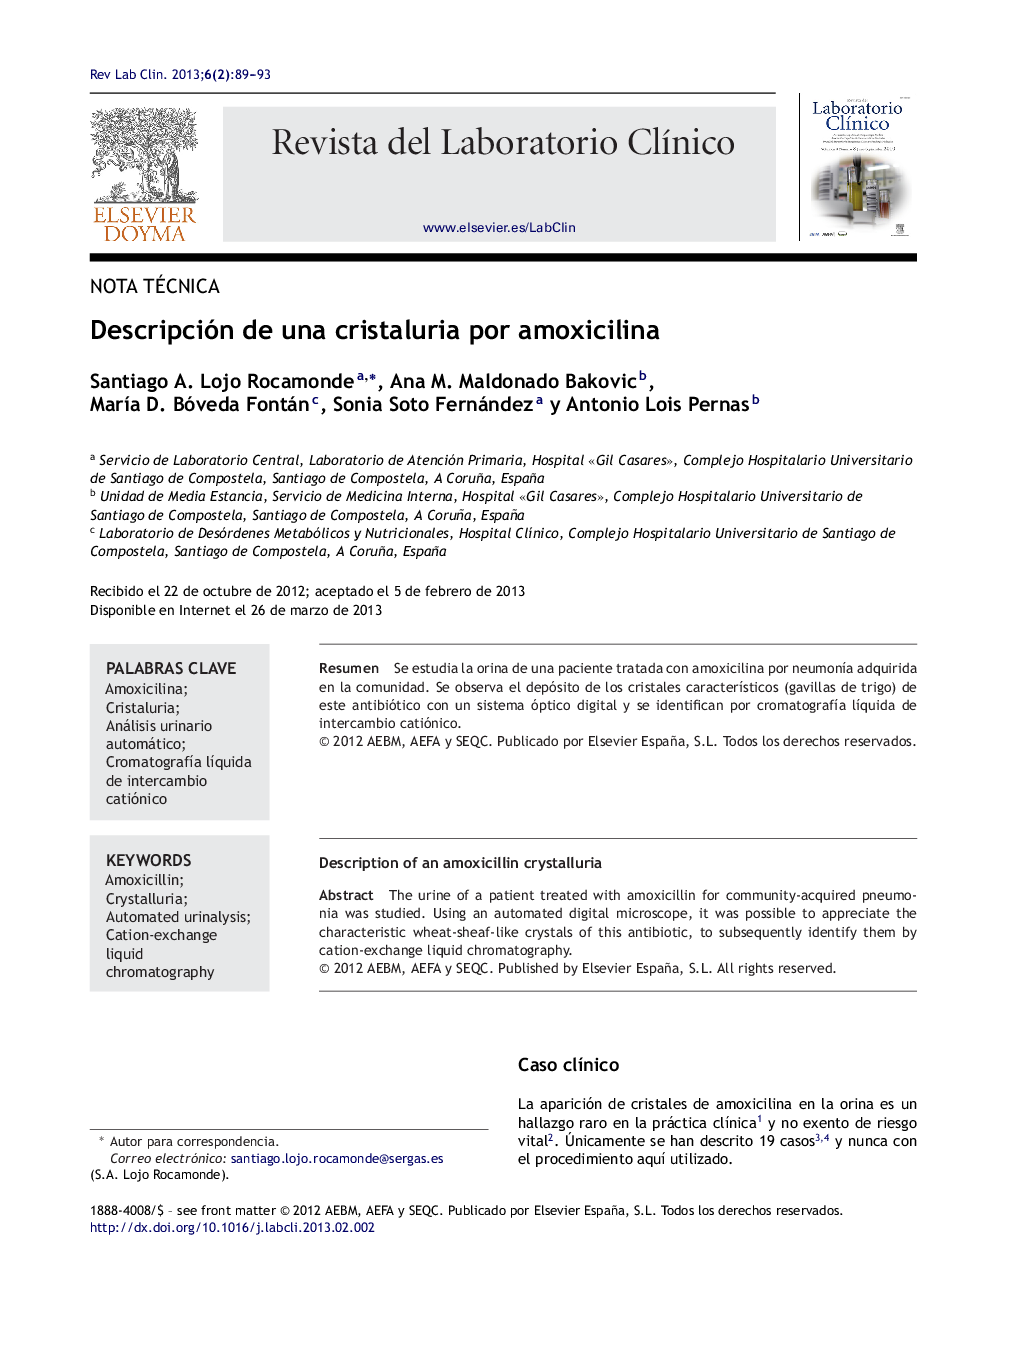 Descripción de una cristaluria por amoxicilina